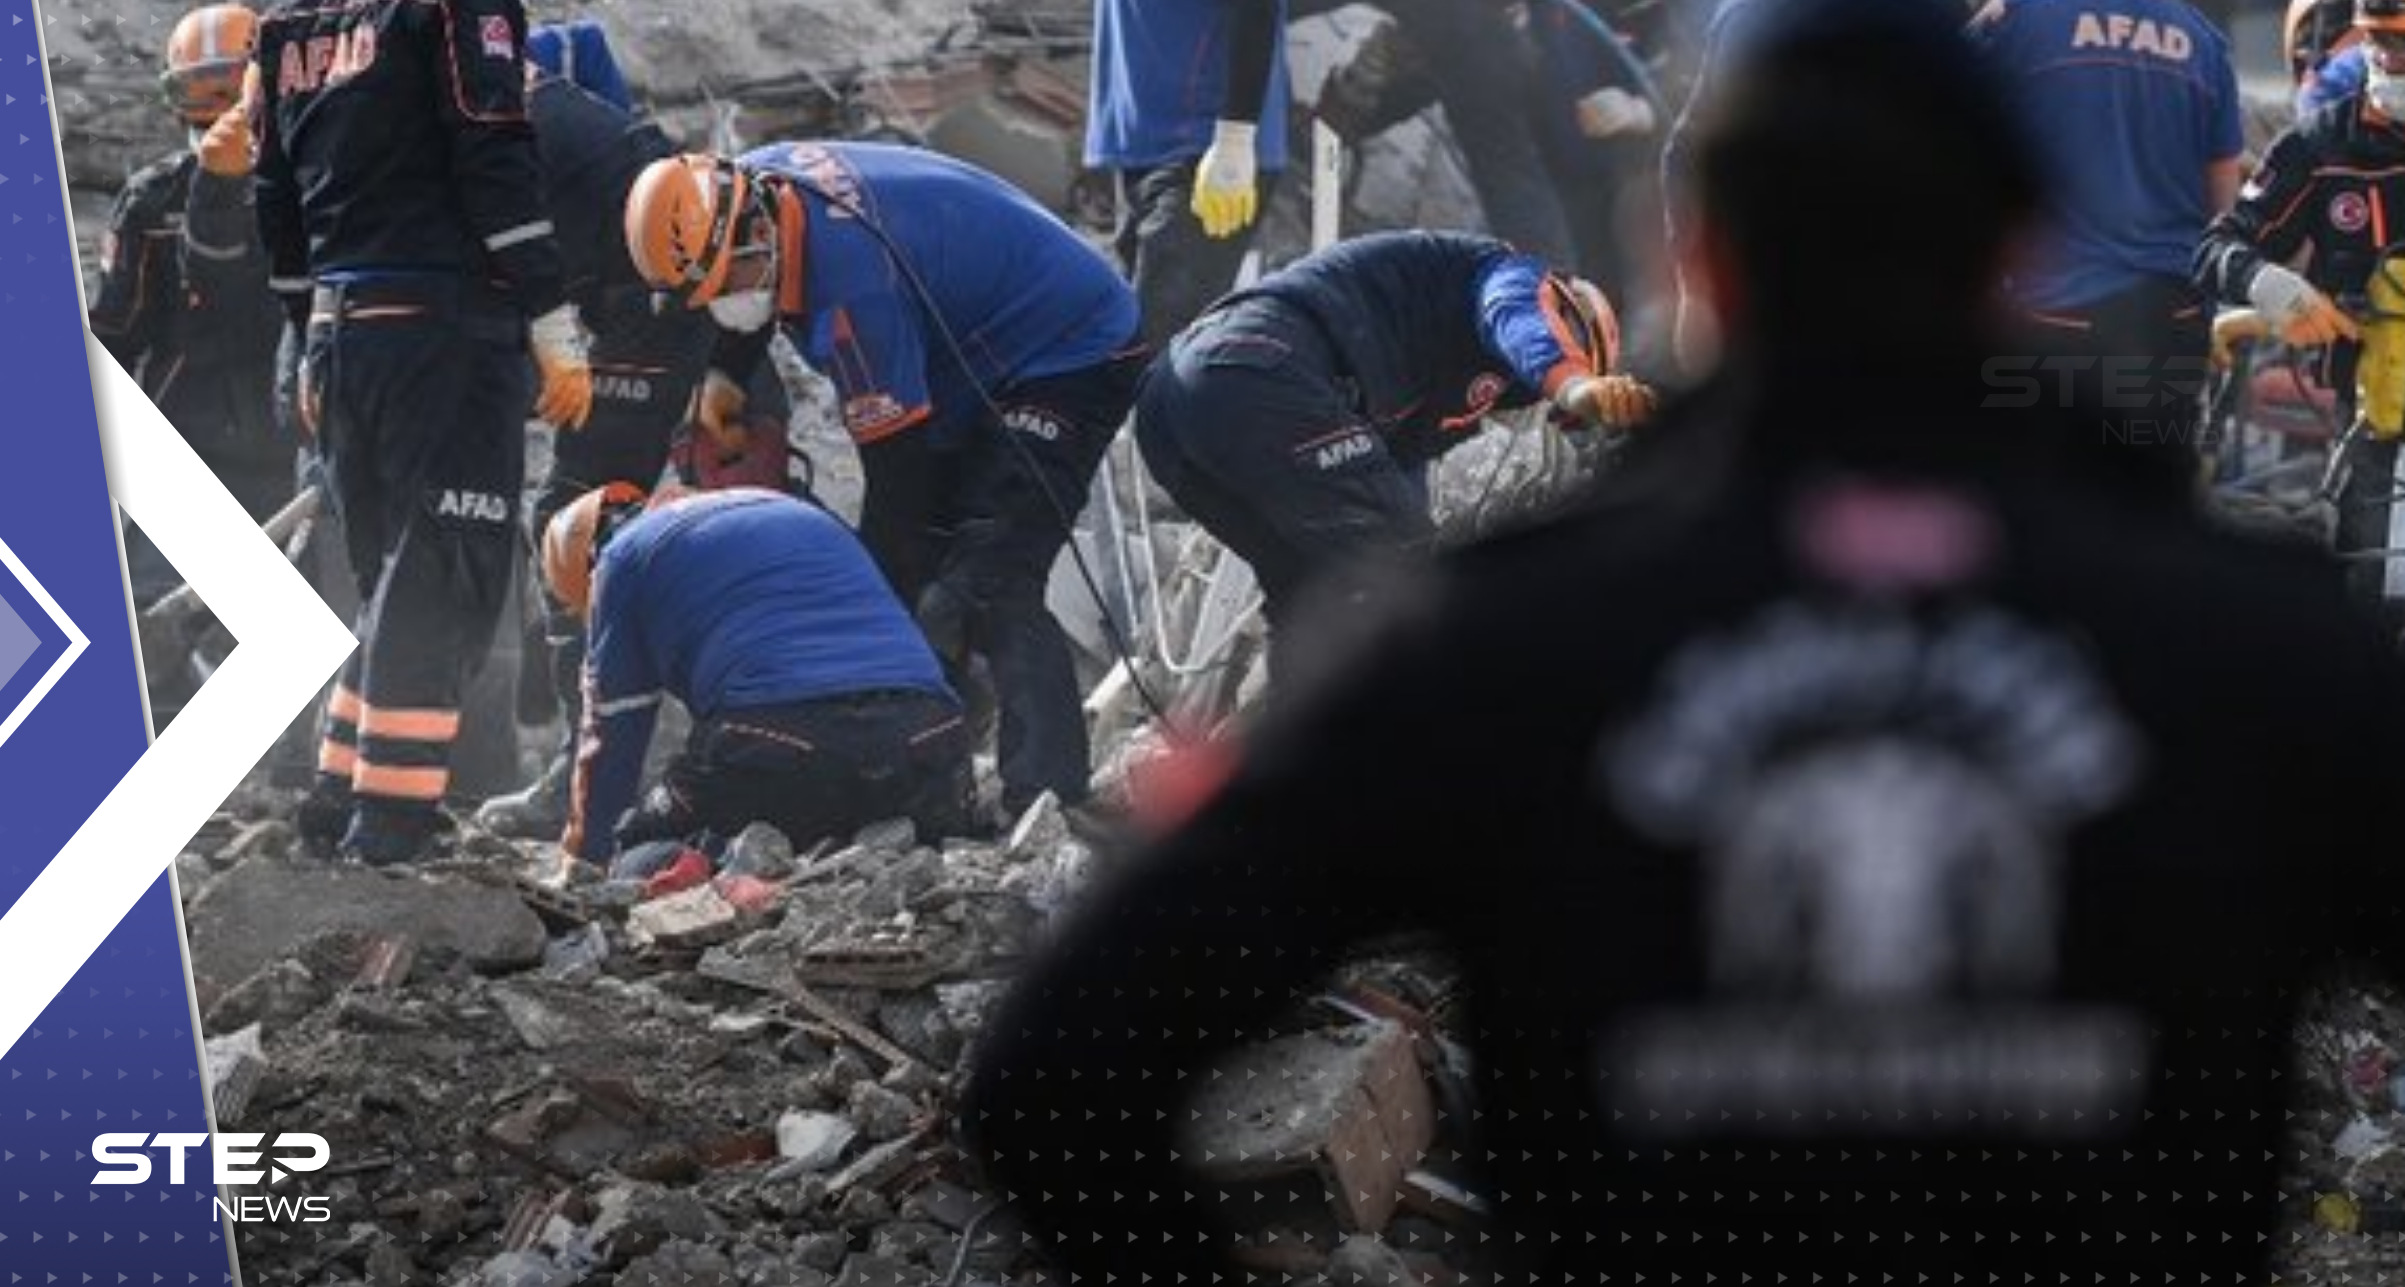 من هي الدول التي أعلنت إرسال مساعدات لتركيا وسوريا بعد الزلزال "المدمّر"؟